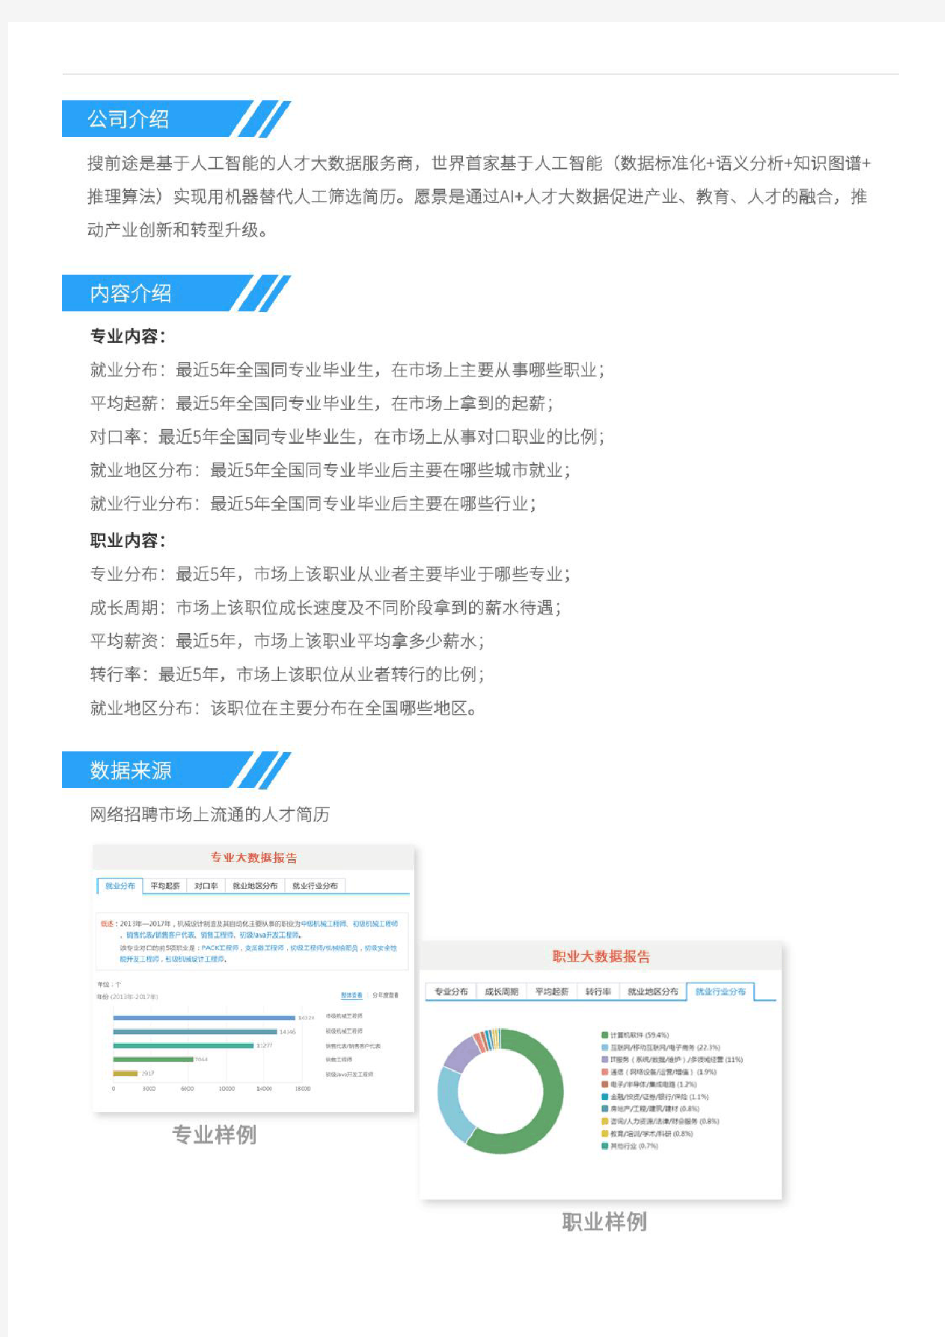 2013-2017年上海交通大学电气类专业毕业生就业大数据报告